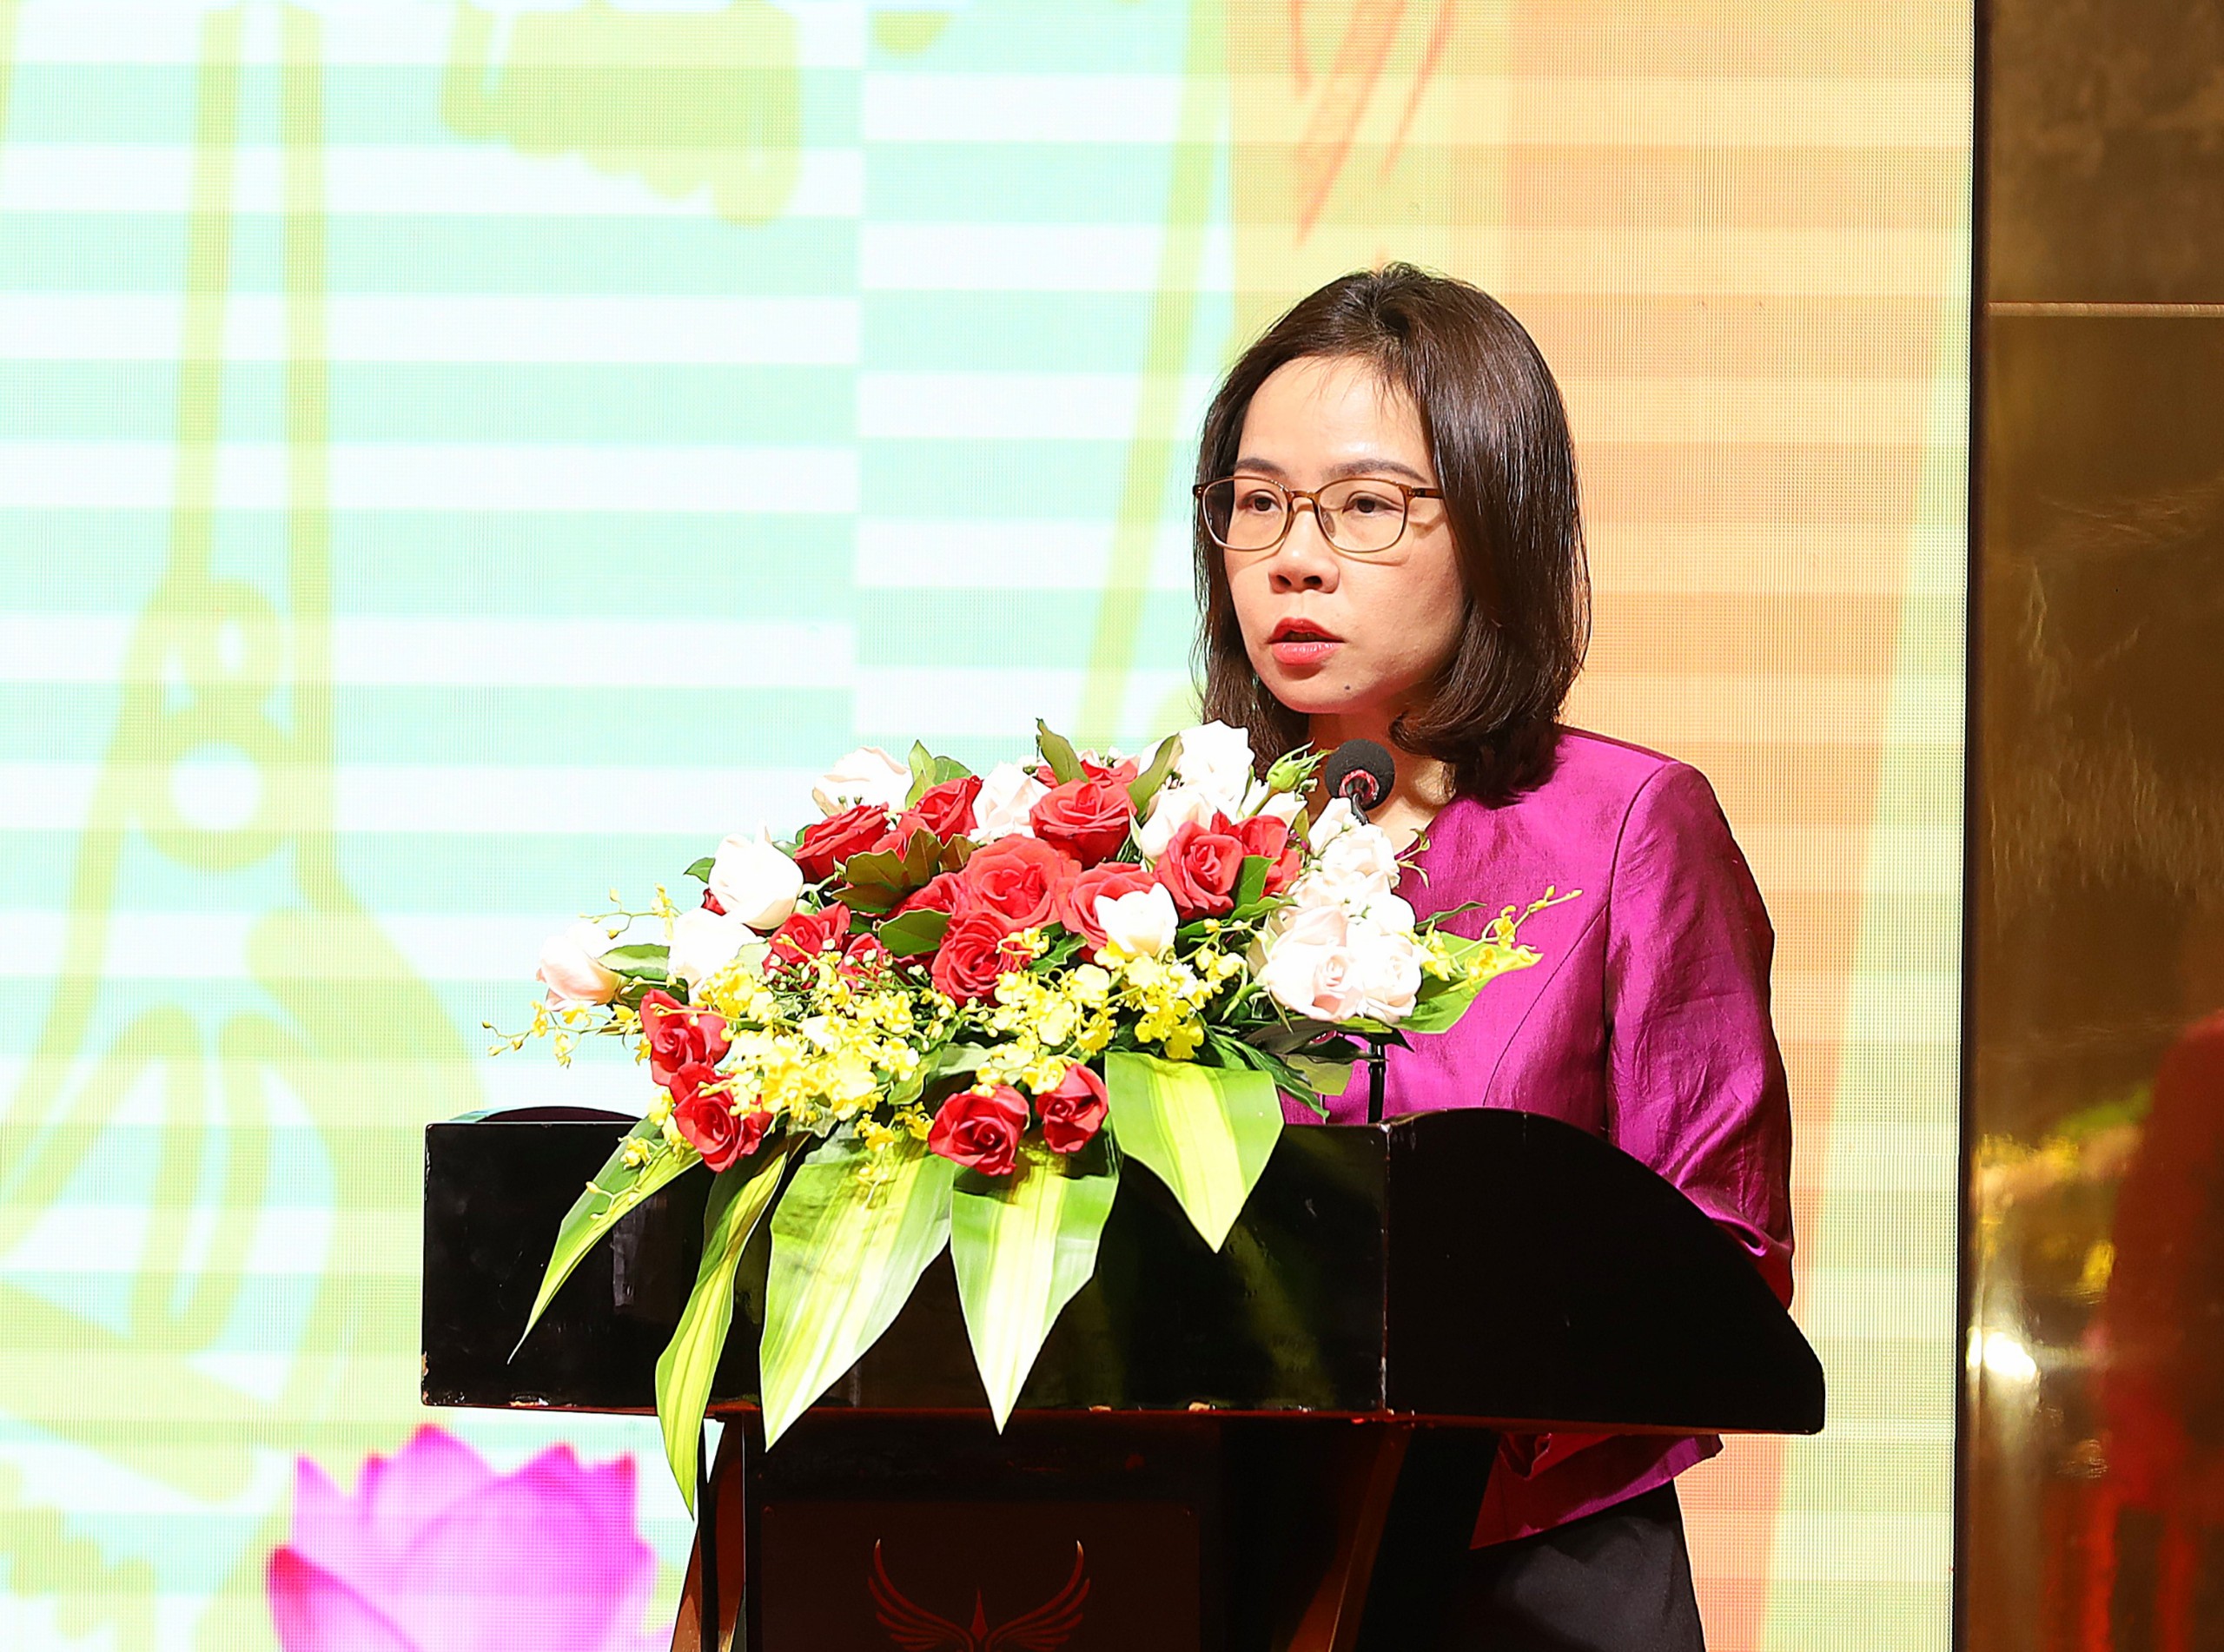 Bà Hà Thu Giang - Vụ trưởng Vụ Tín dụng các ngành kinh tế - NHNN báo cáo về tình hình tín dụng đối với các ngành lúa gạo, thủy sản tại vùng ĐBSCL.